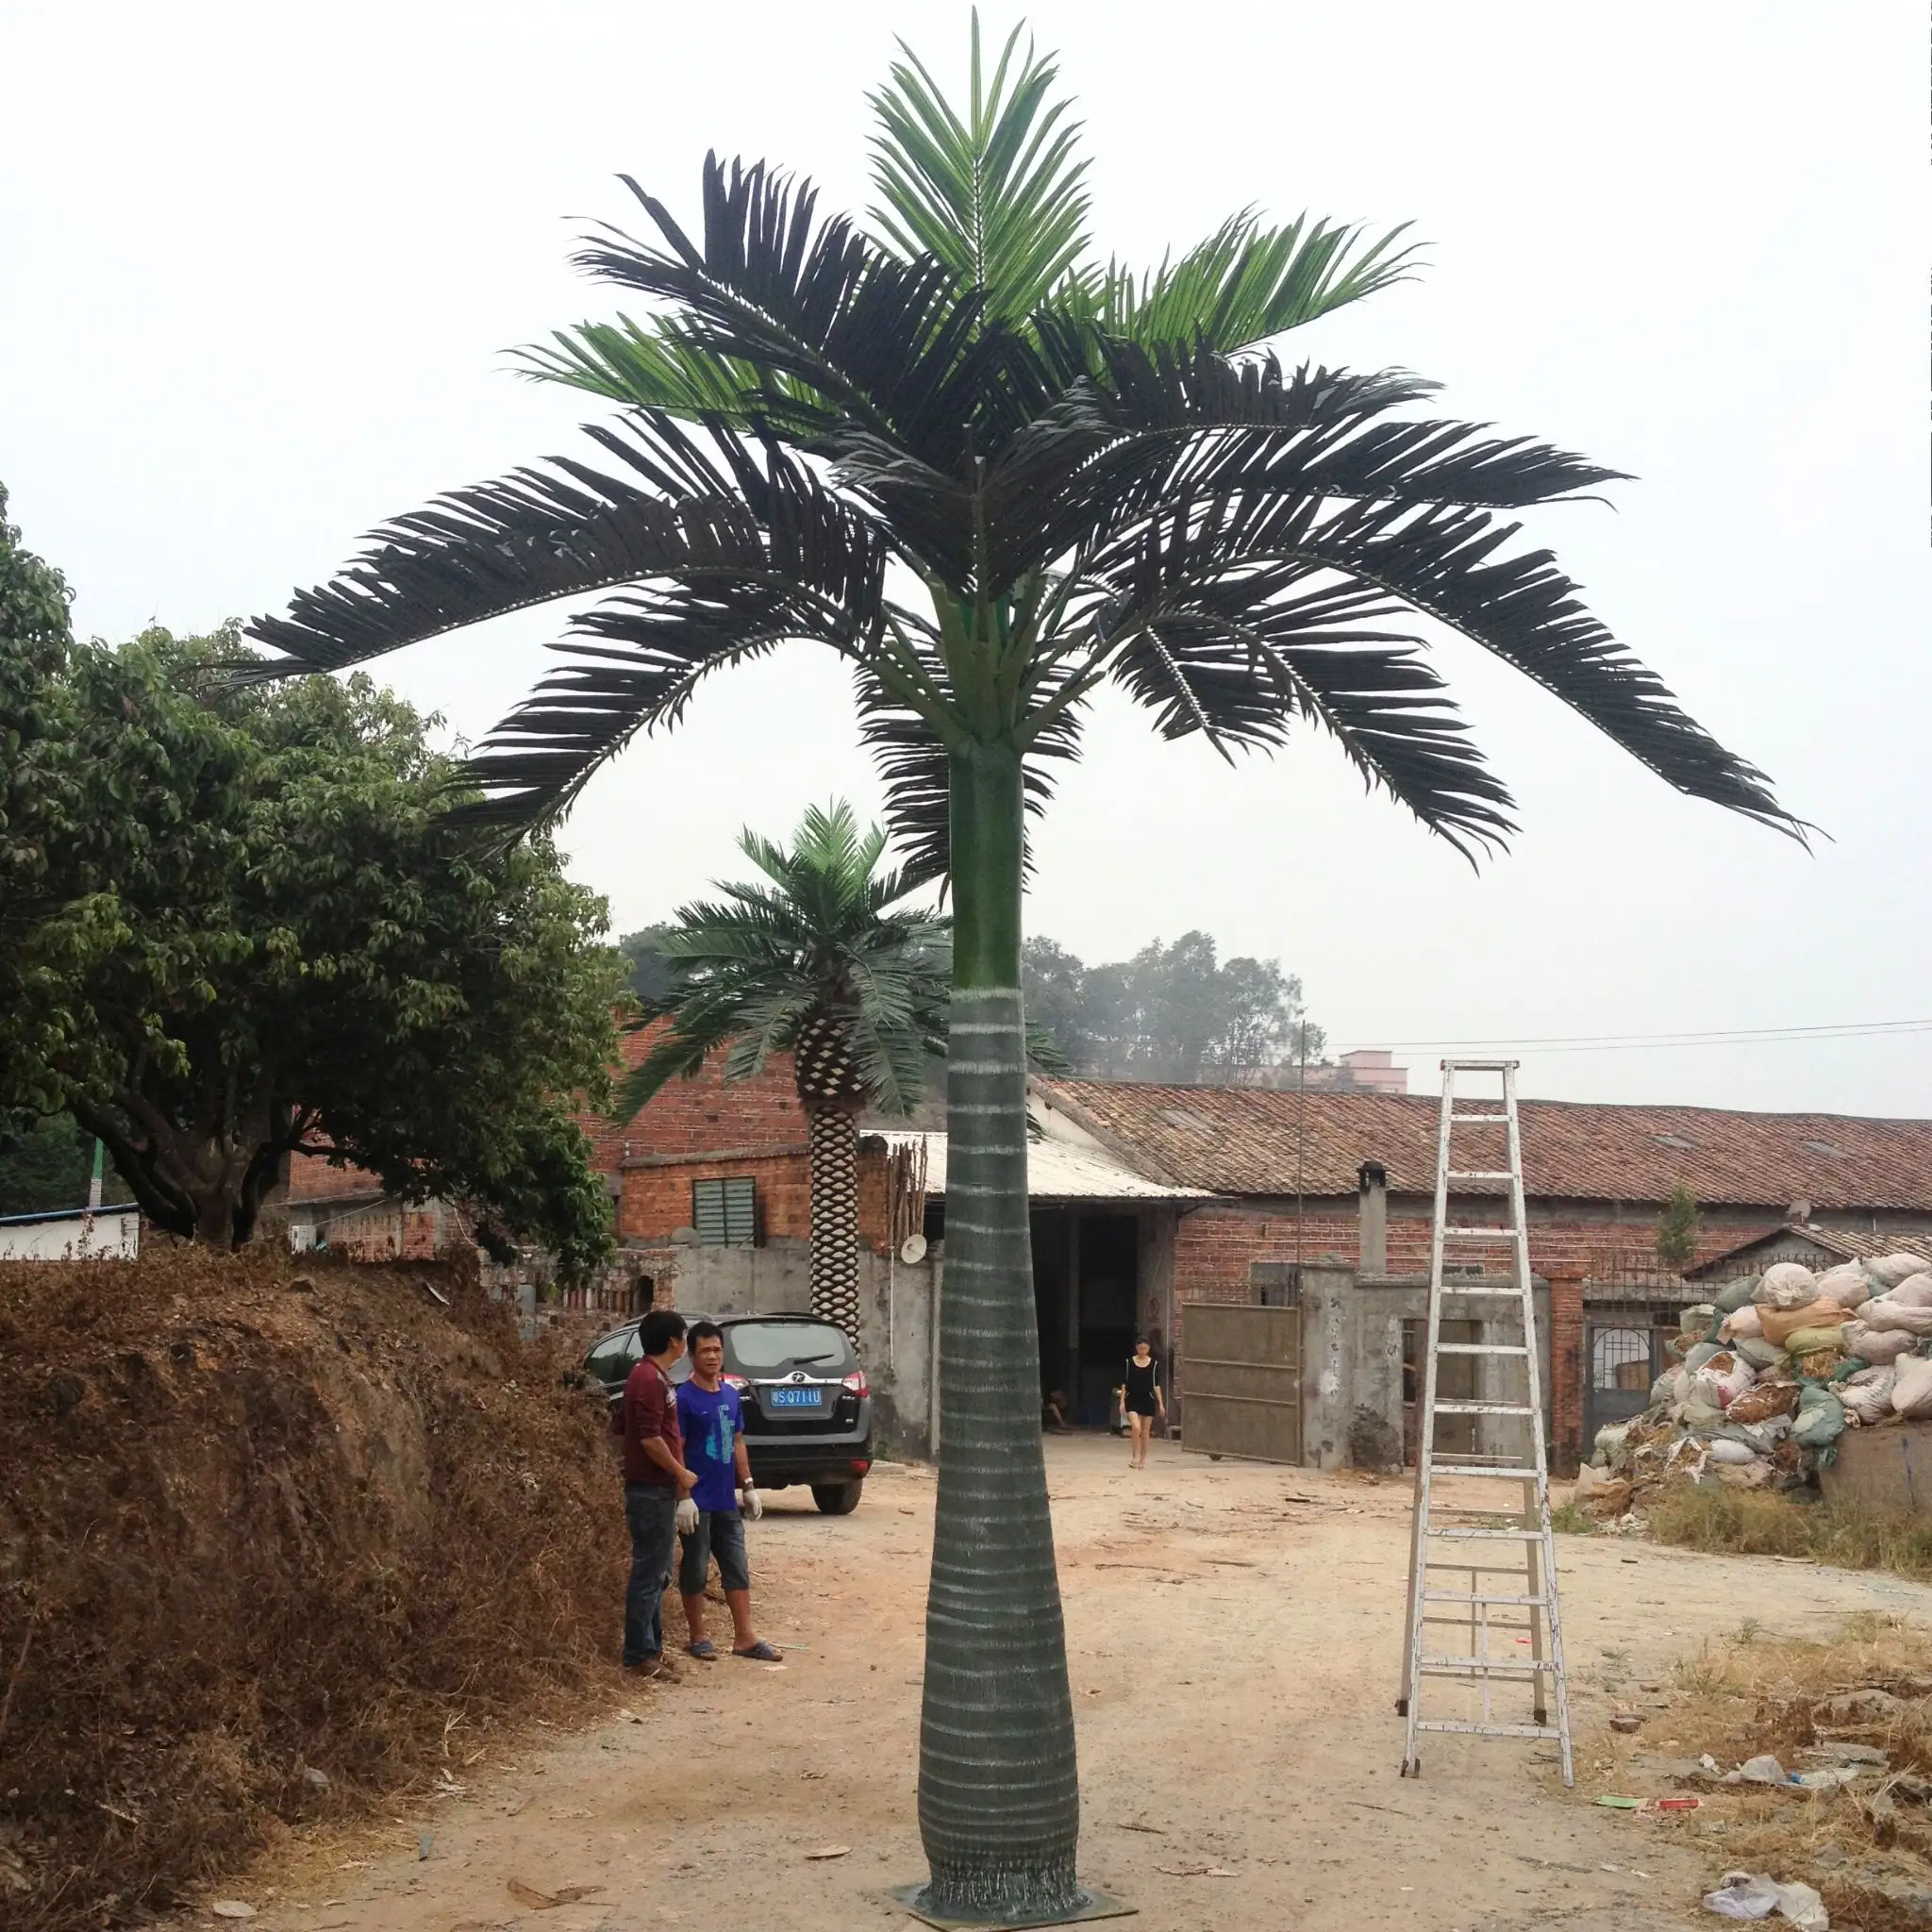 3m 4m 5m 6m simulazione di plastica decorativa cocco albero tropicale UV protetto palma artificiale cocco